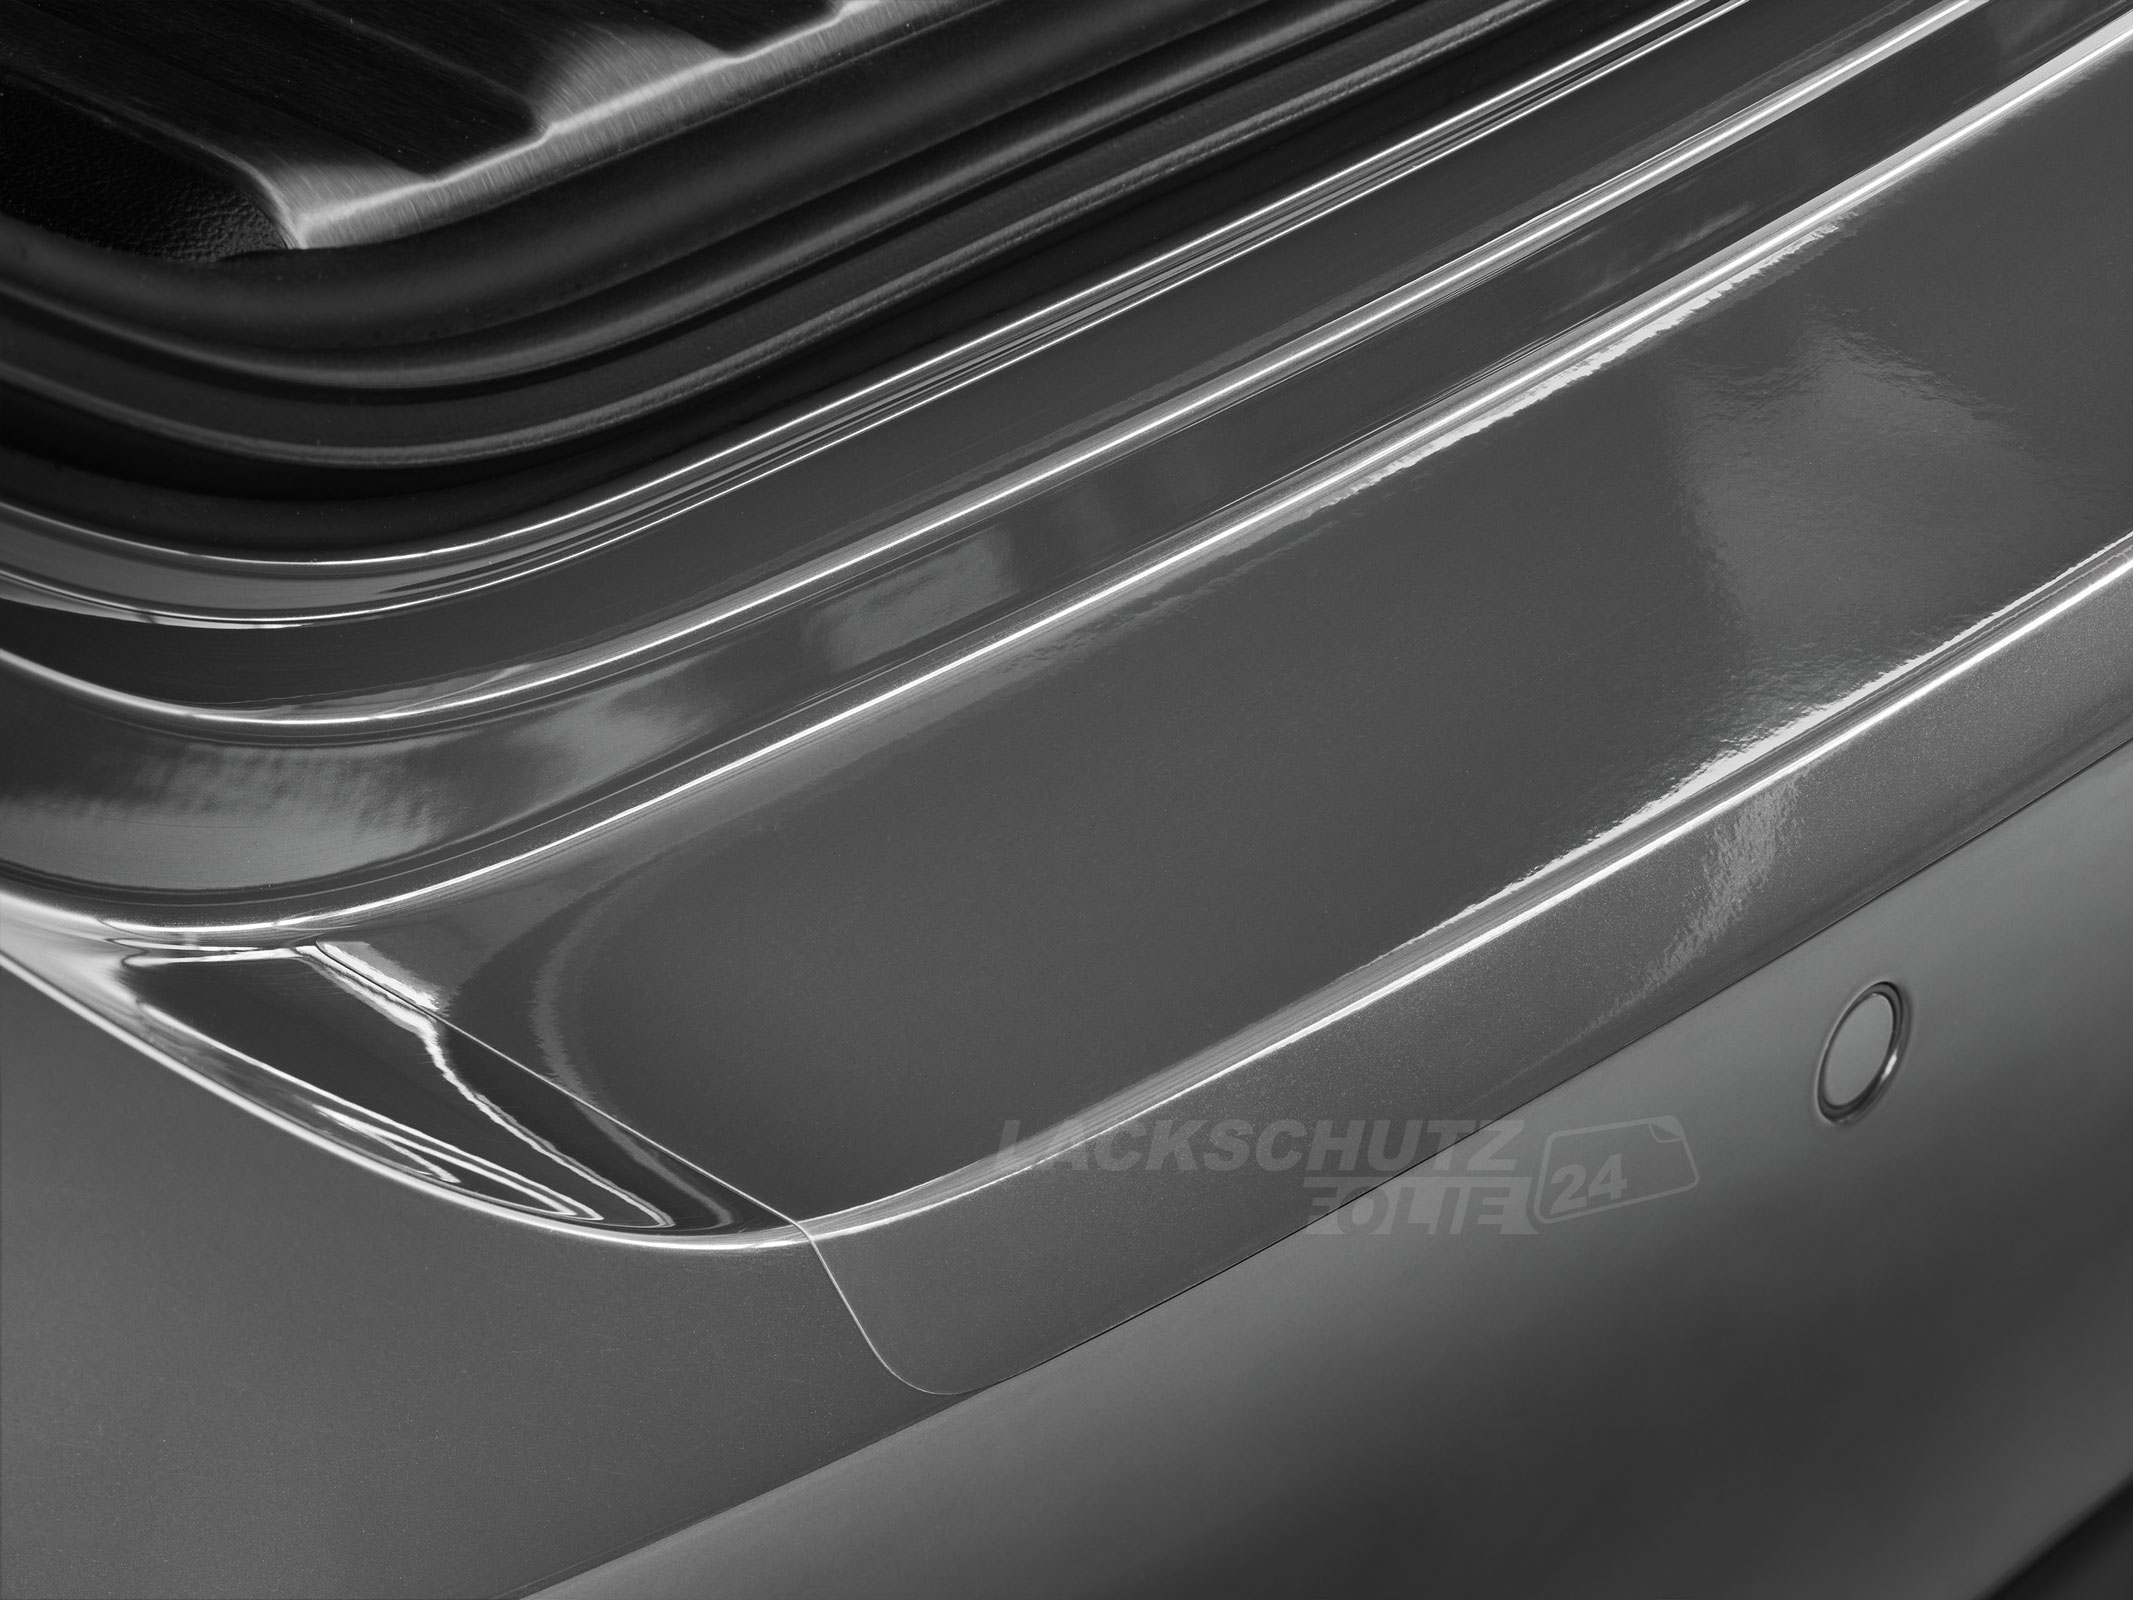 Ladekantenschutzfolie - Transparent Glatt Hochglänzend 150 µm stark für Audi A4 Avant (Kombi) B7, Typ 8E, BJ 2004-2008